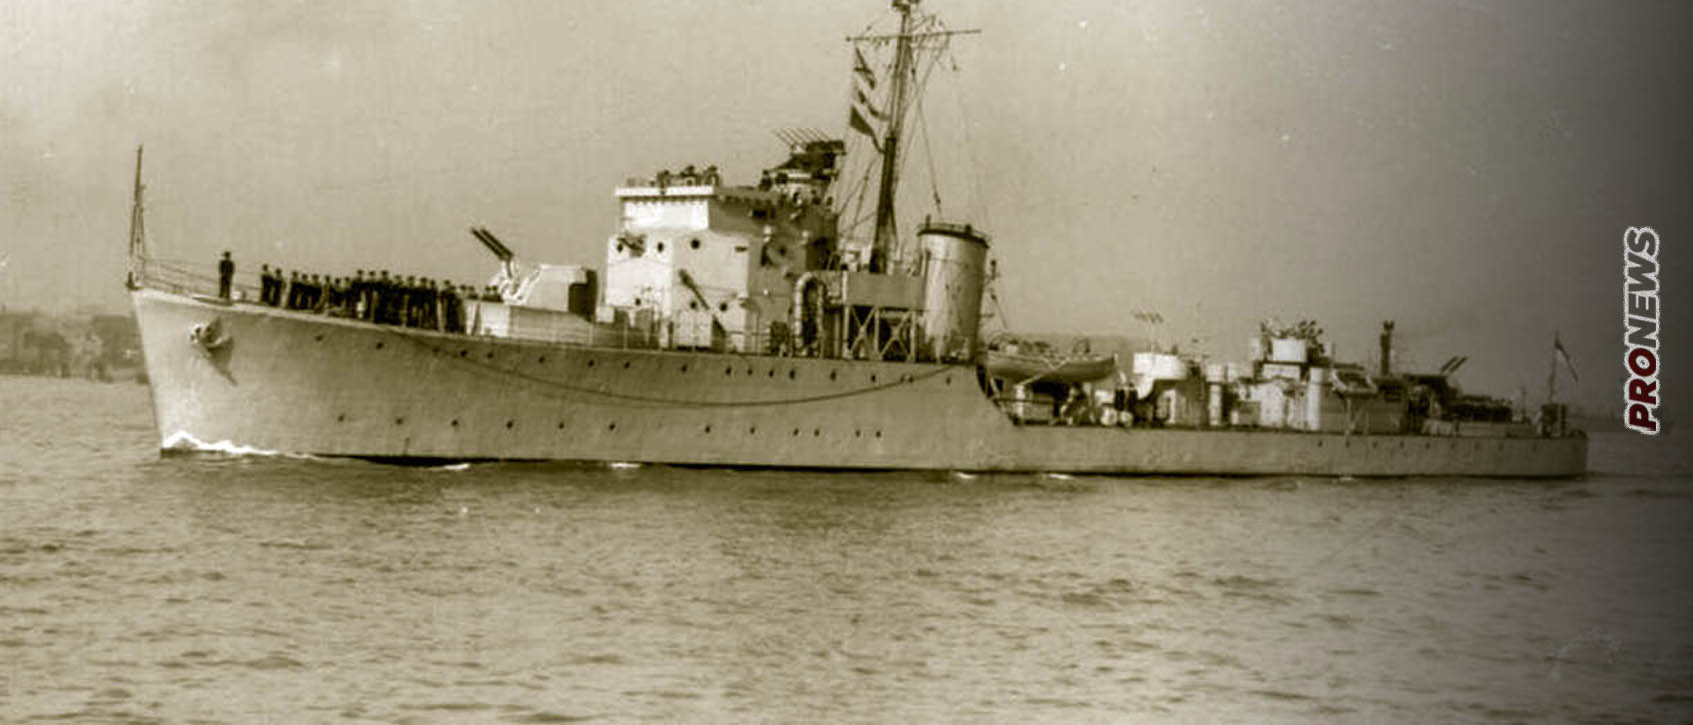 Αντιτορπιλικό «ΠΙΝΔΟΣ»: Το σκάφος του ελληνικού Βασιλικού Ναυτικού που βύθισε το γερμανικό υποβρύχιο U-458